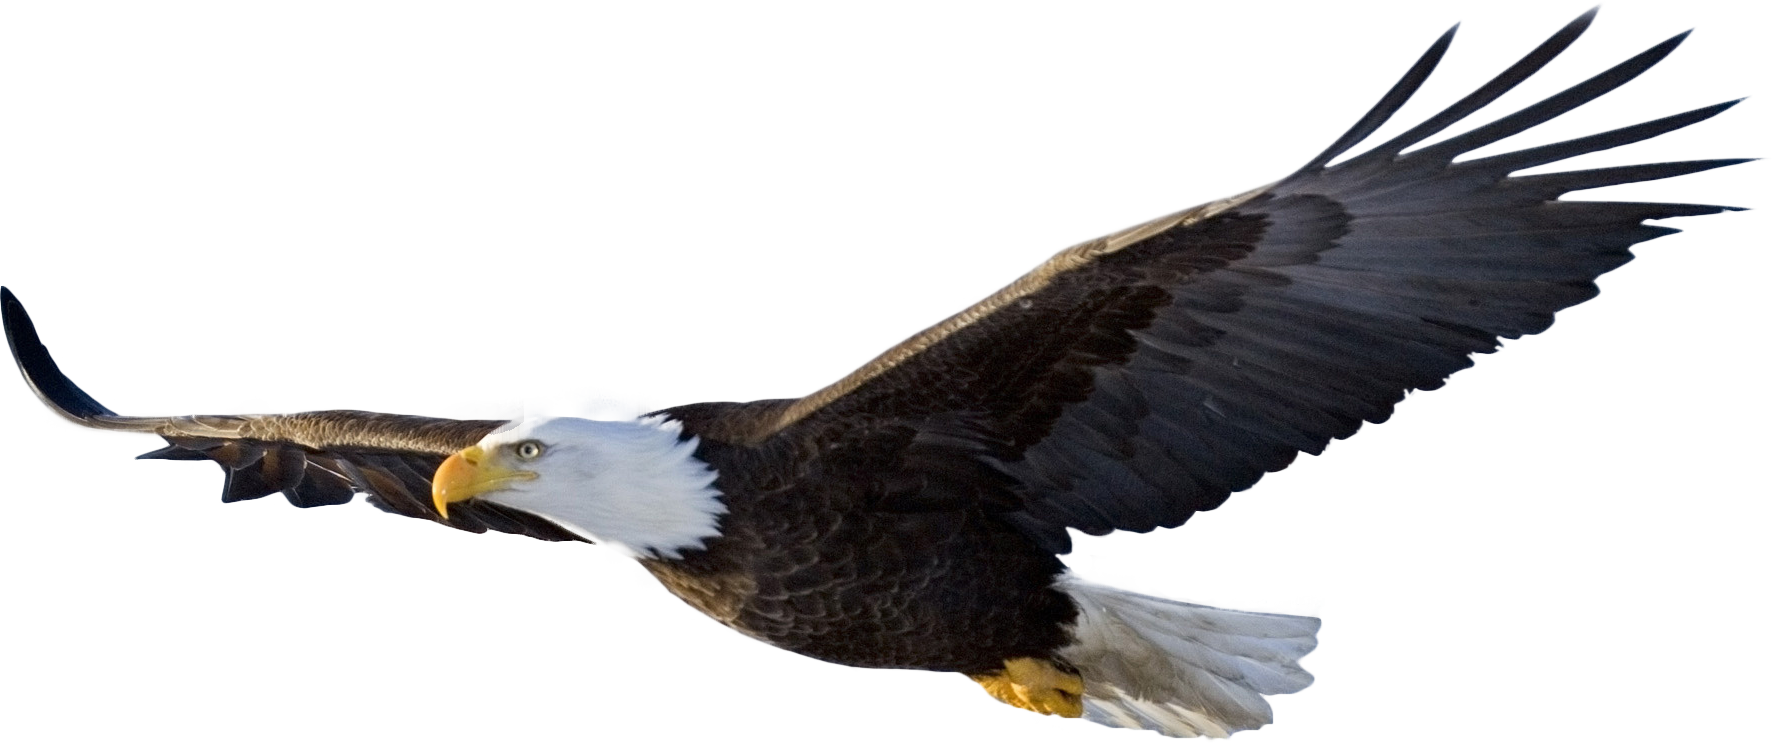 bald eagle flying PNG Image